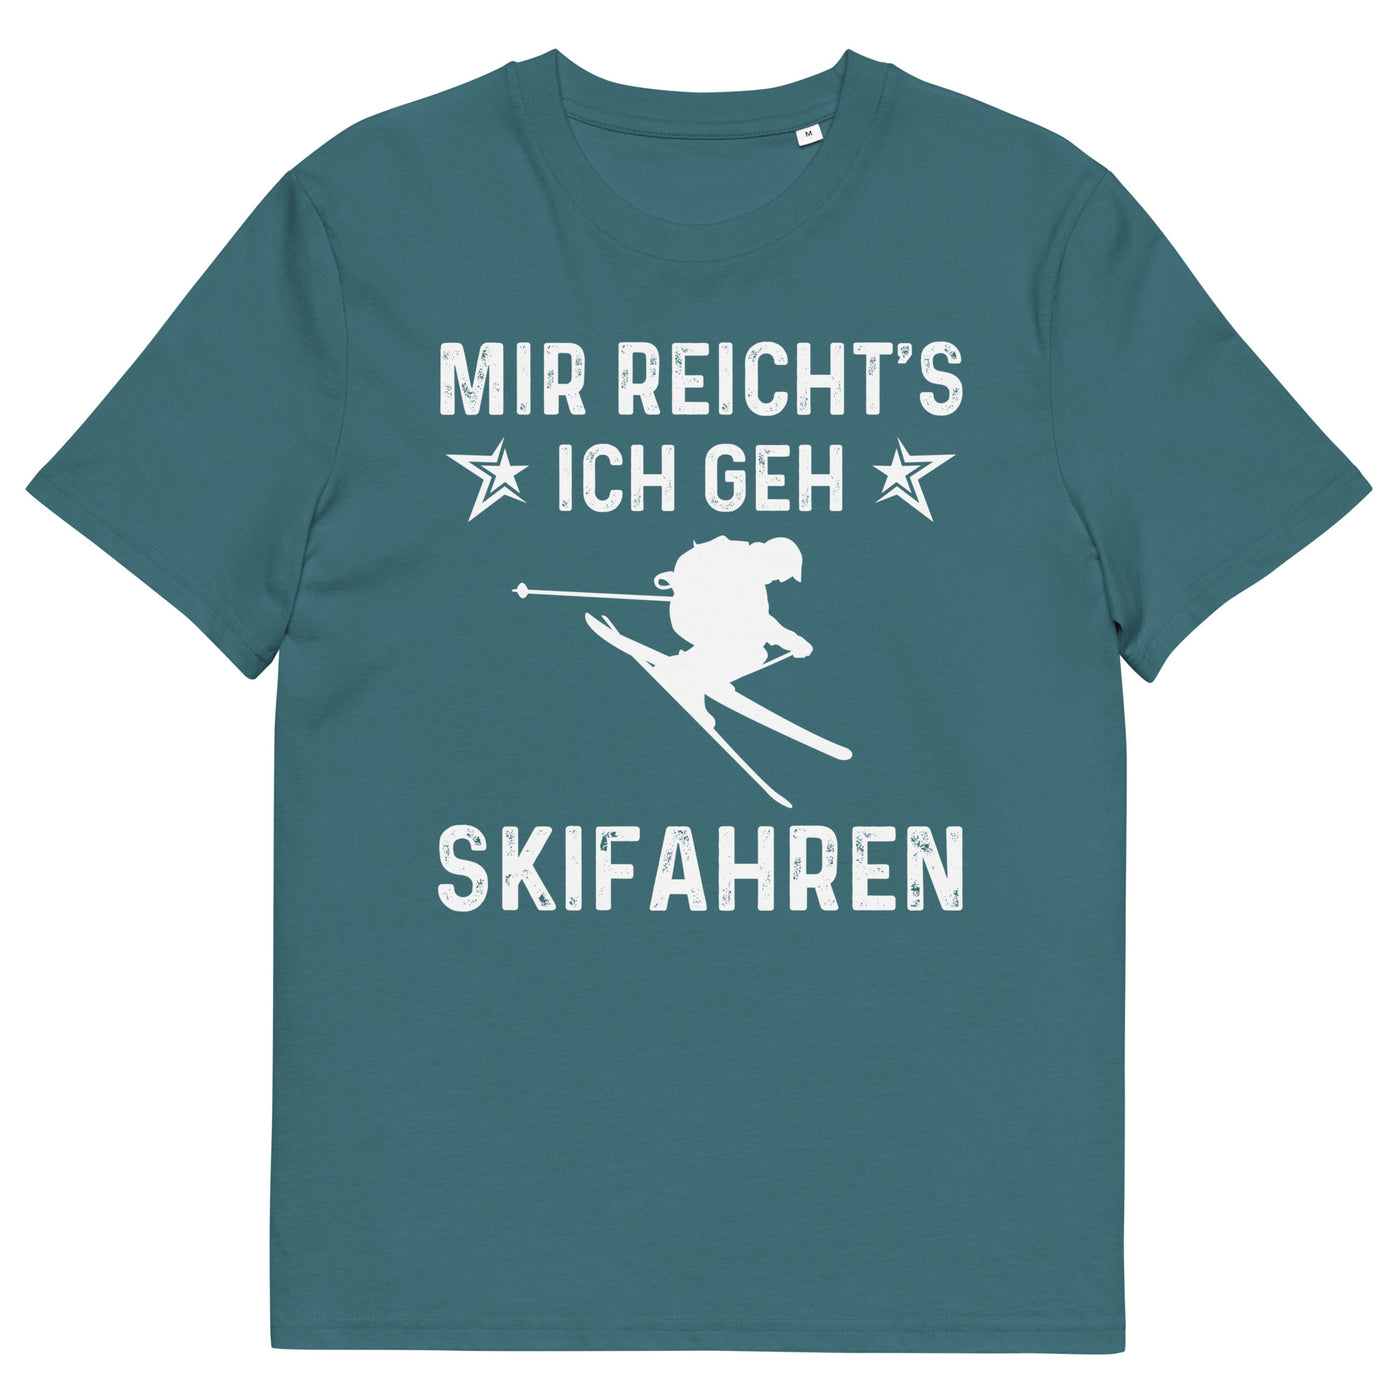 Mir Reicht's Ich Gen Skifahren - Herren Premium Organic T-Shirt klettern ski xxx yyy zzz Stargazer